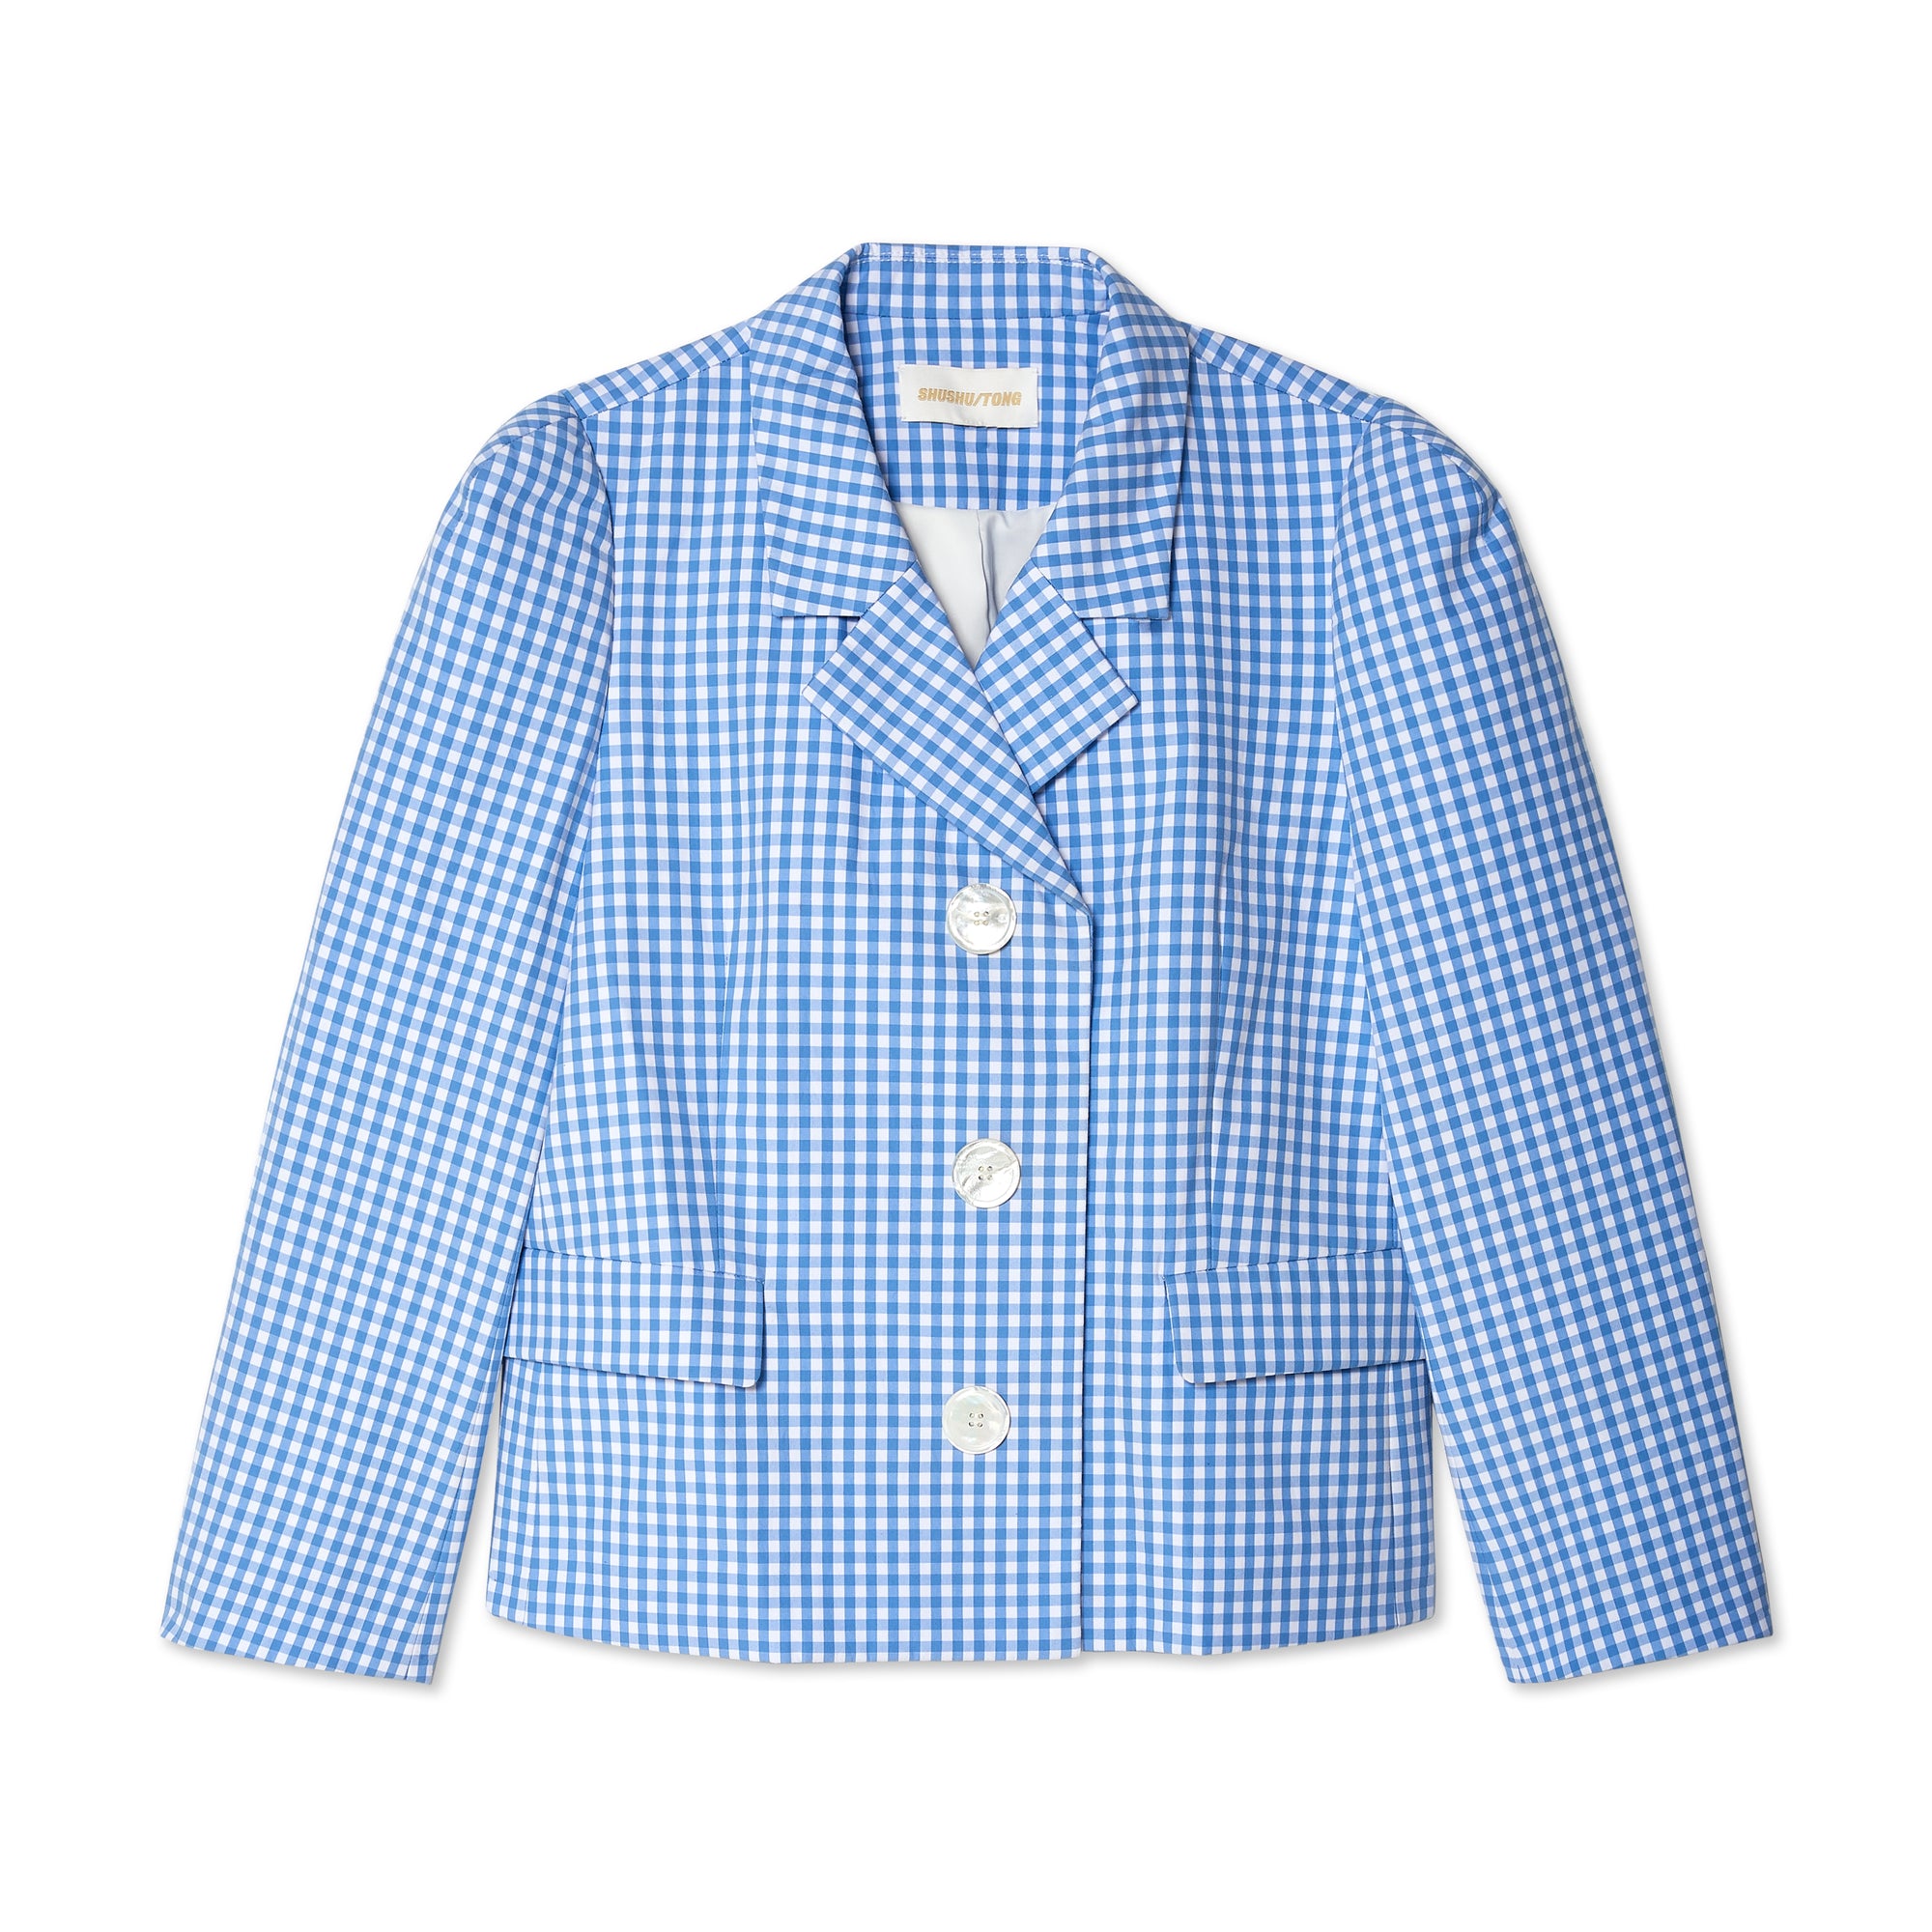 Shushu/Tong - Women's Check Jacket - (Blue) view 1